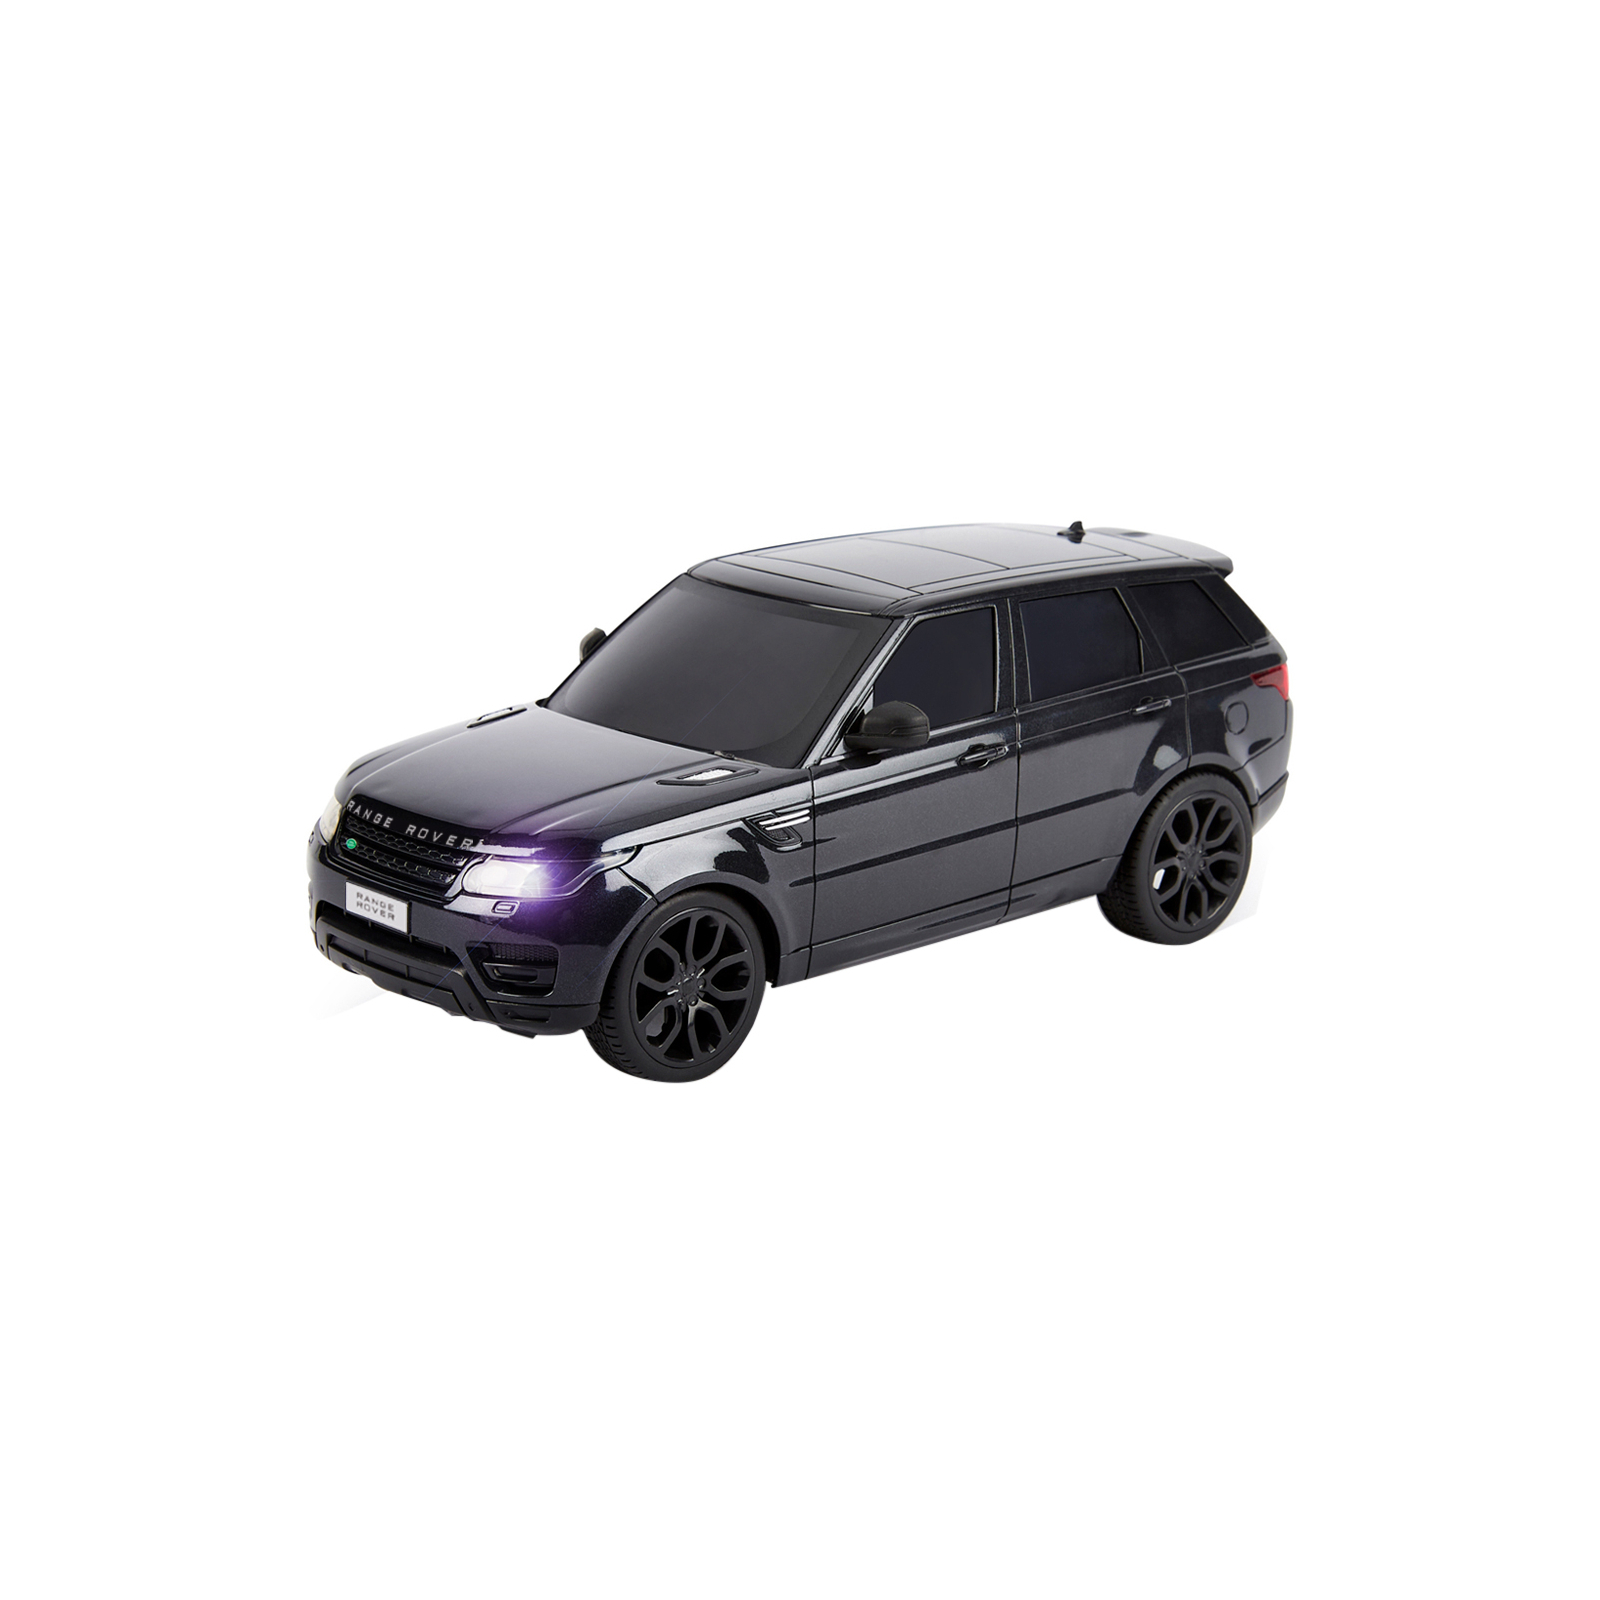 Радиоуправляемая игрушка KS Drive Land Range Rover Sport 1:24, 2.4Ghz черный (124GRRB)